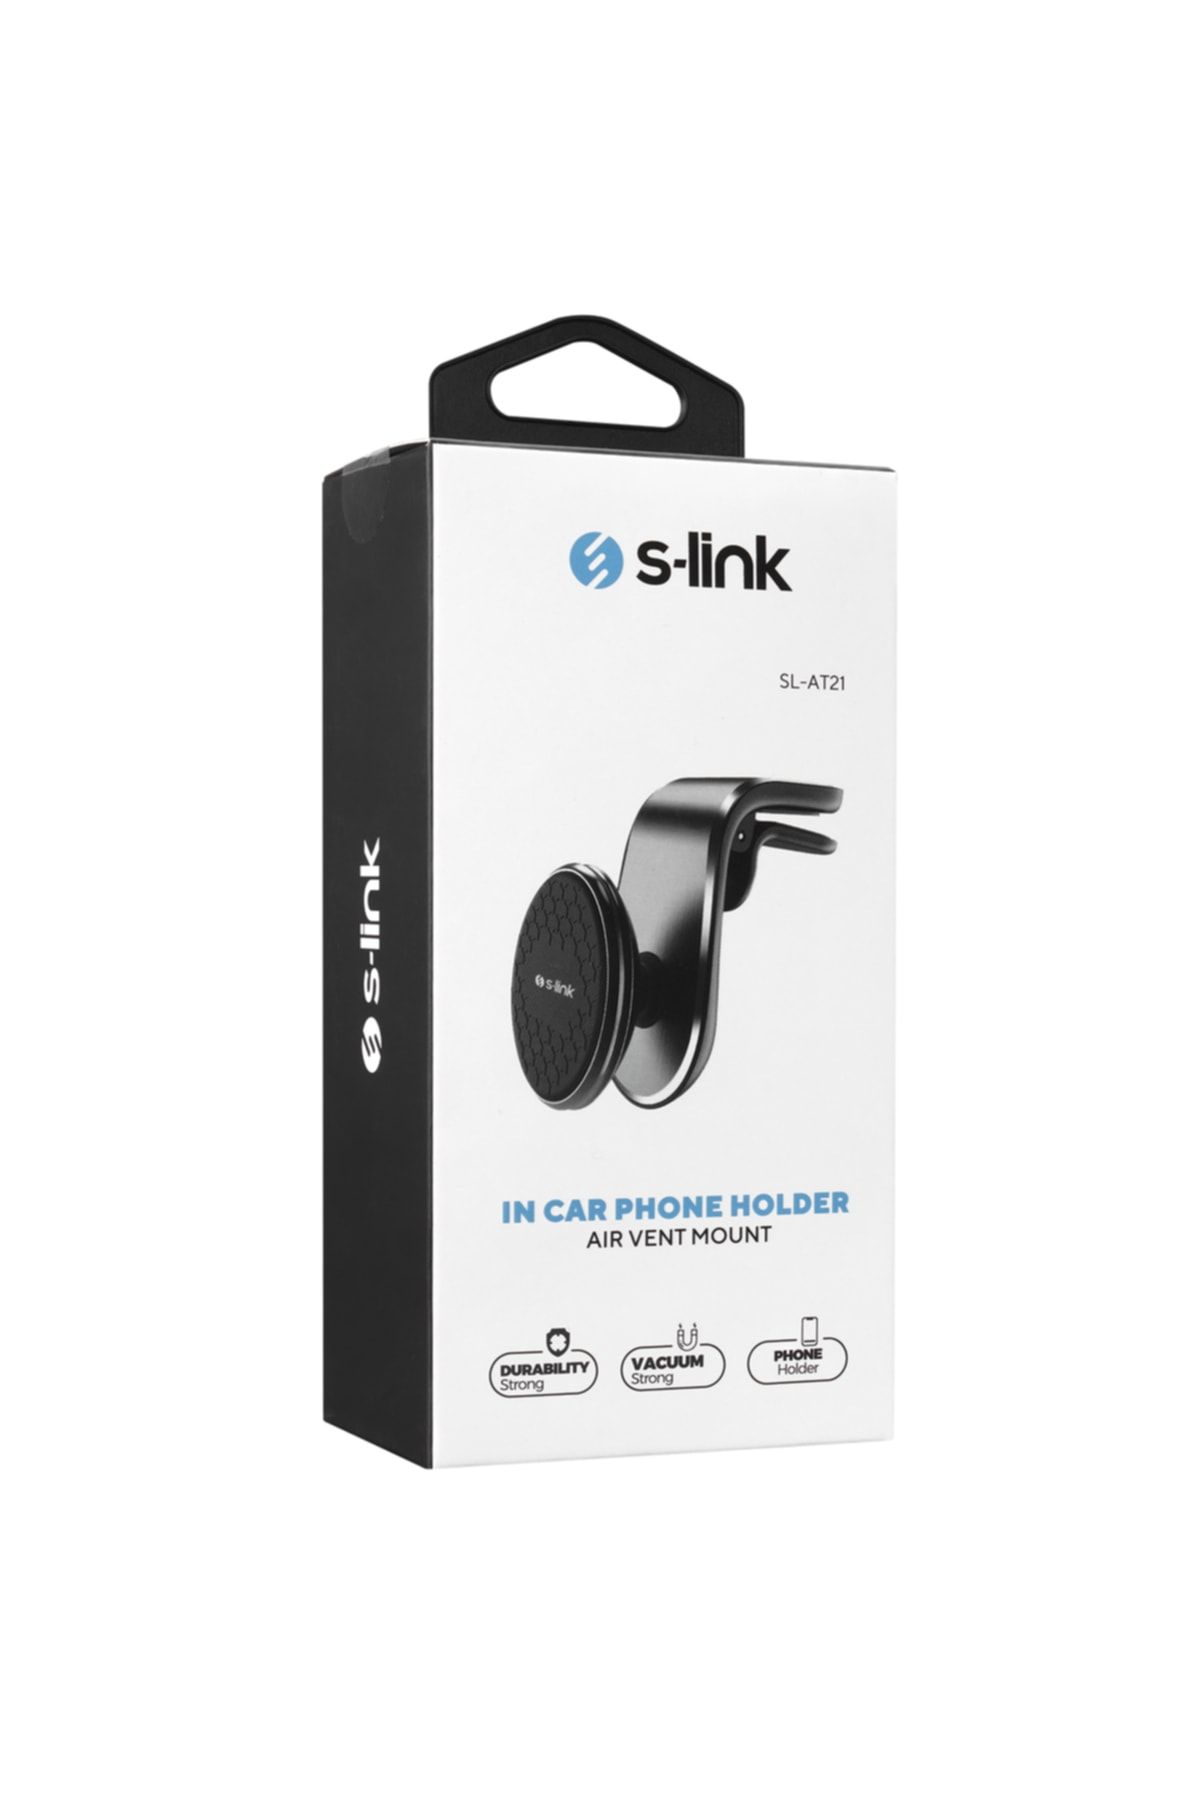 S-Link Universal Ayarlanabilir Mıknatıslı Araç Telefon Tutucu S-link Sl-at21-